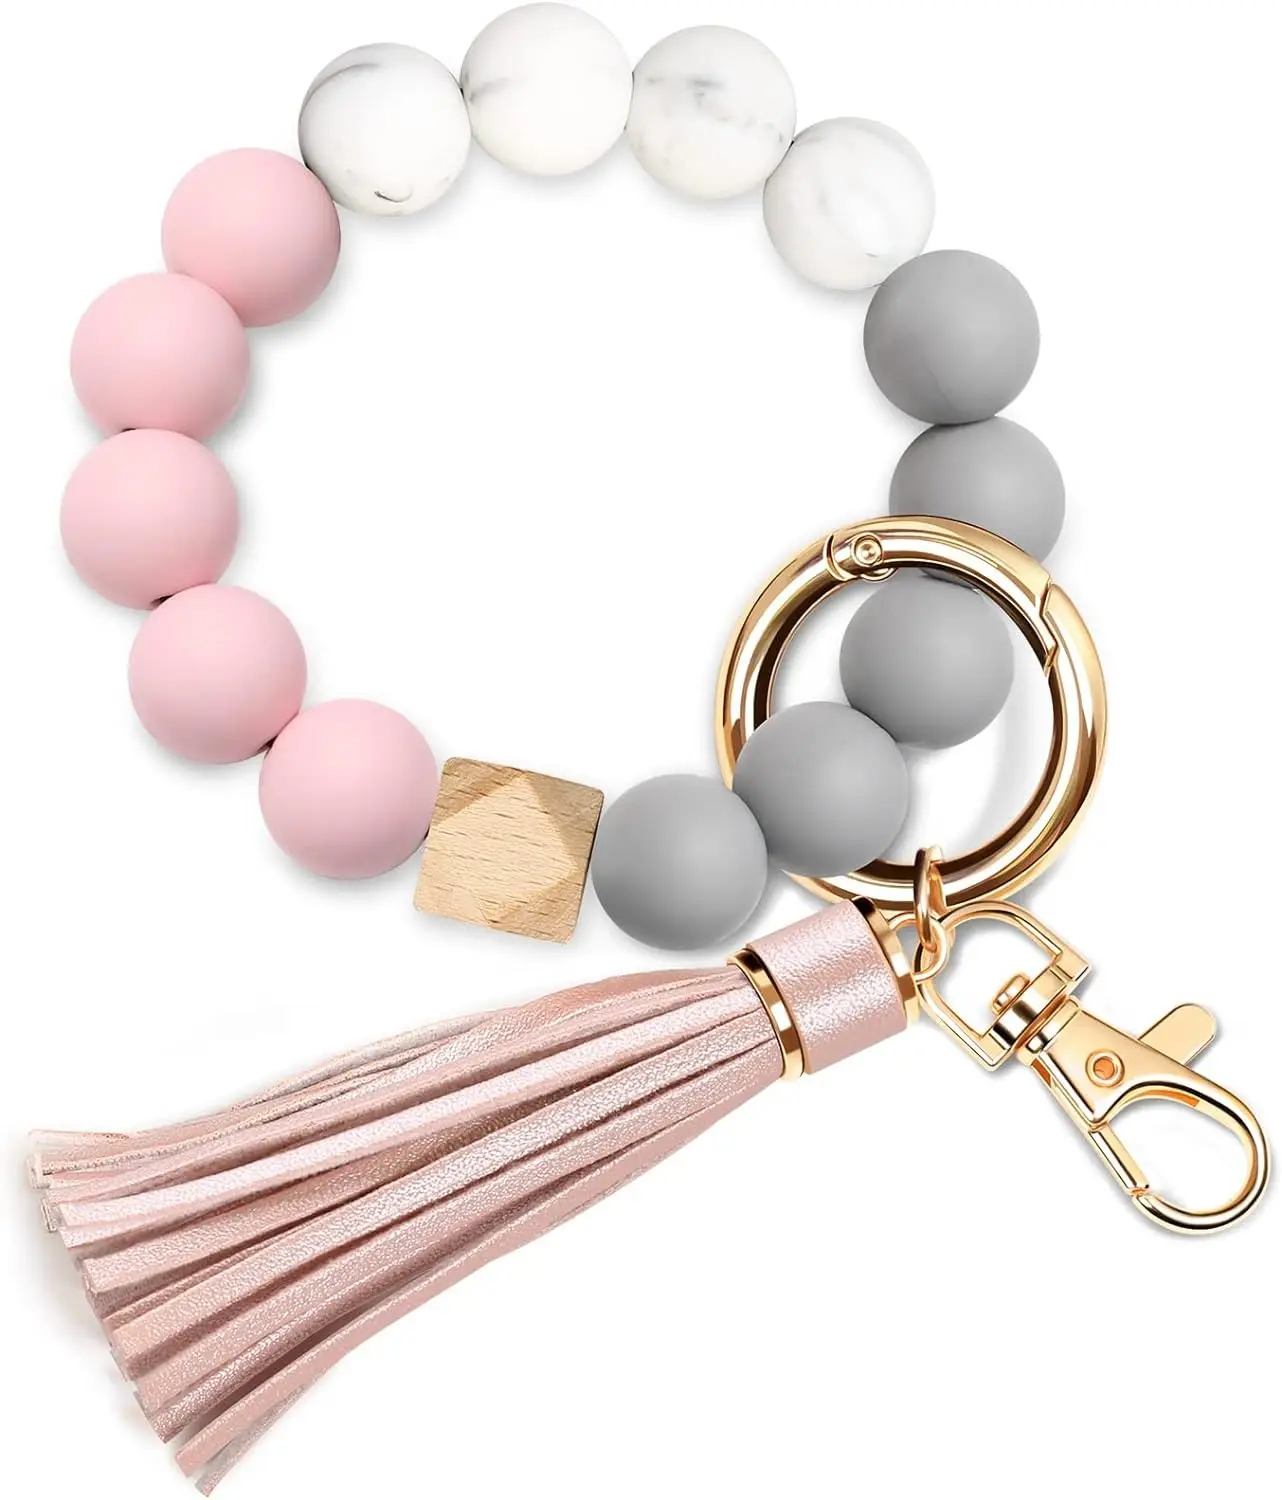 Échantillon gratuit bracelet porte-clés en silicone accepter porte-clés personnalisé bracelet bracelet porte-clés porte-clés bracelet en silicone perle